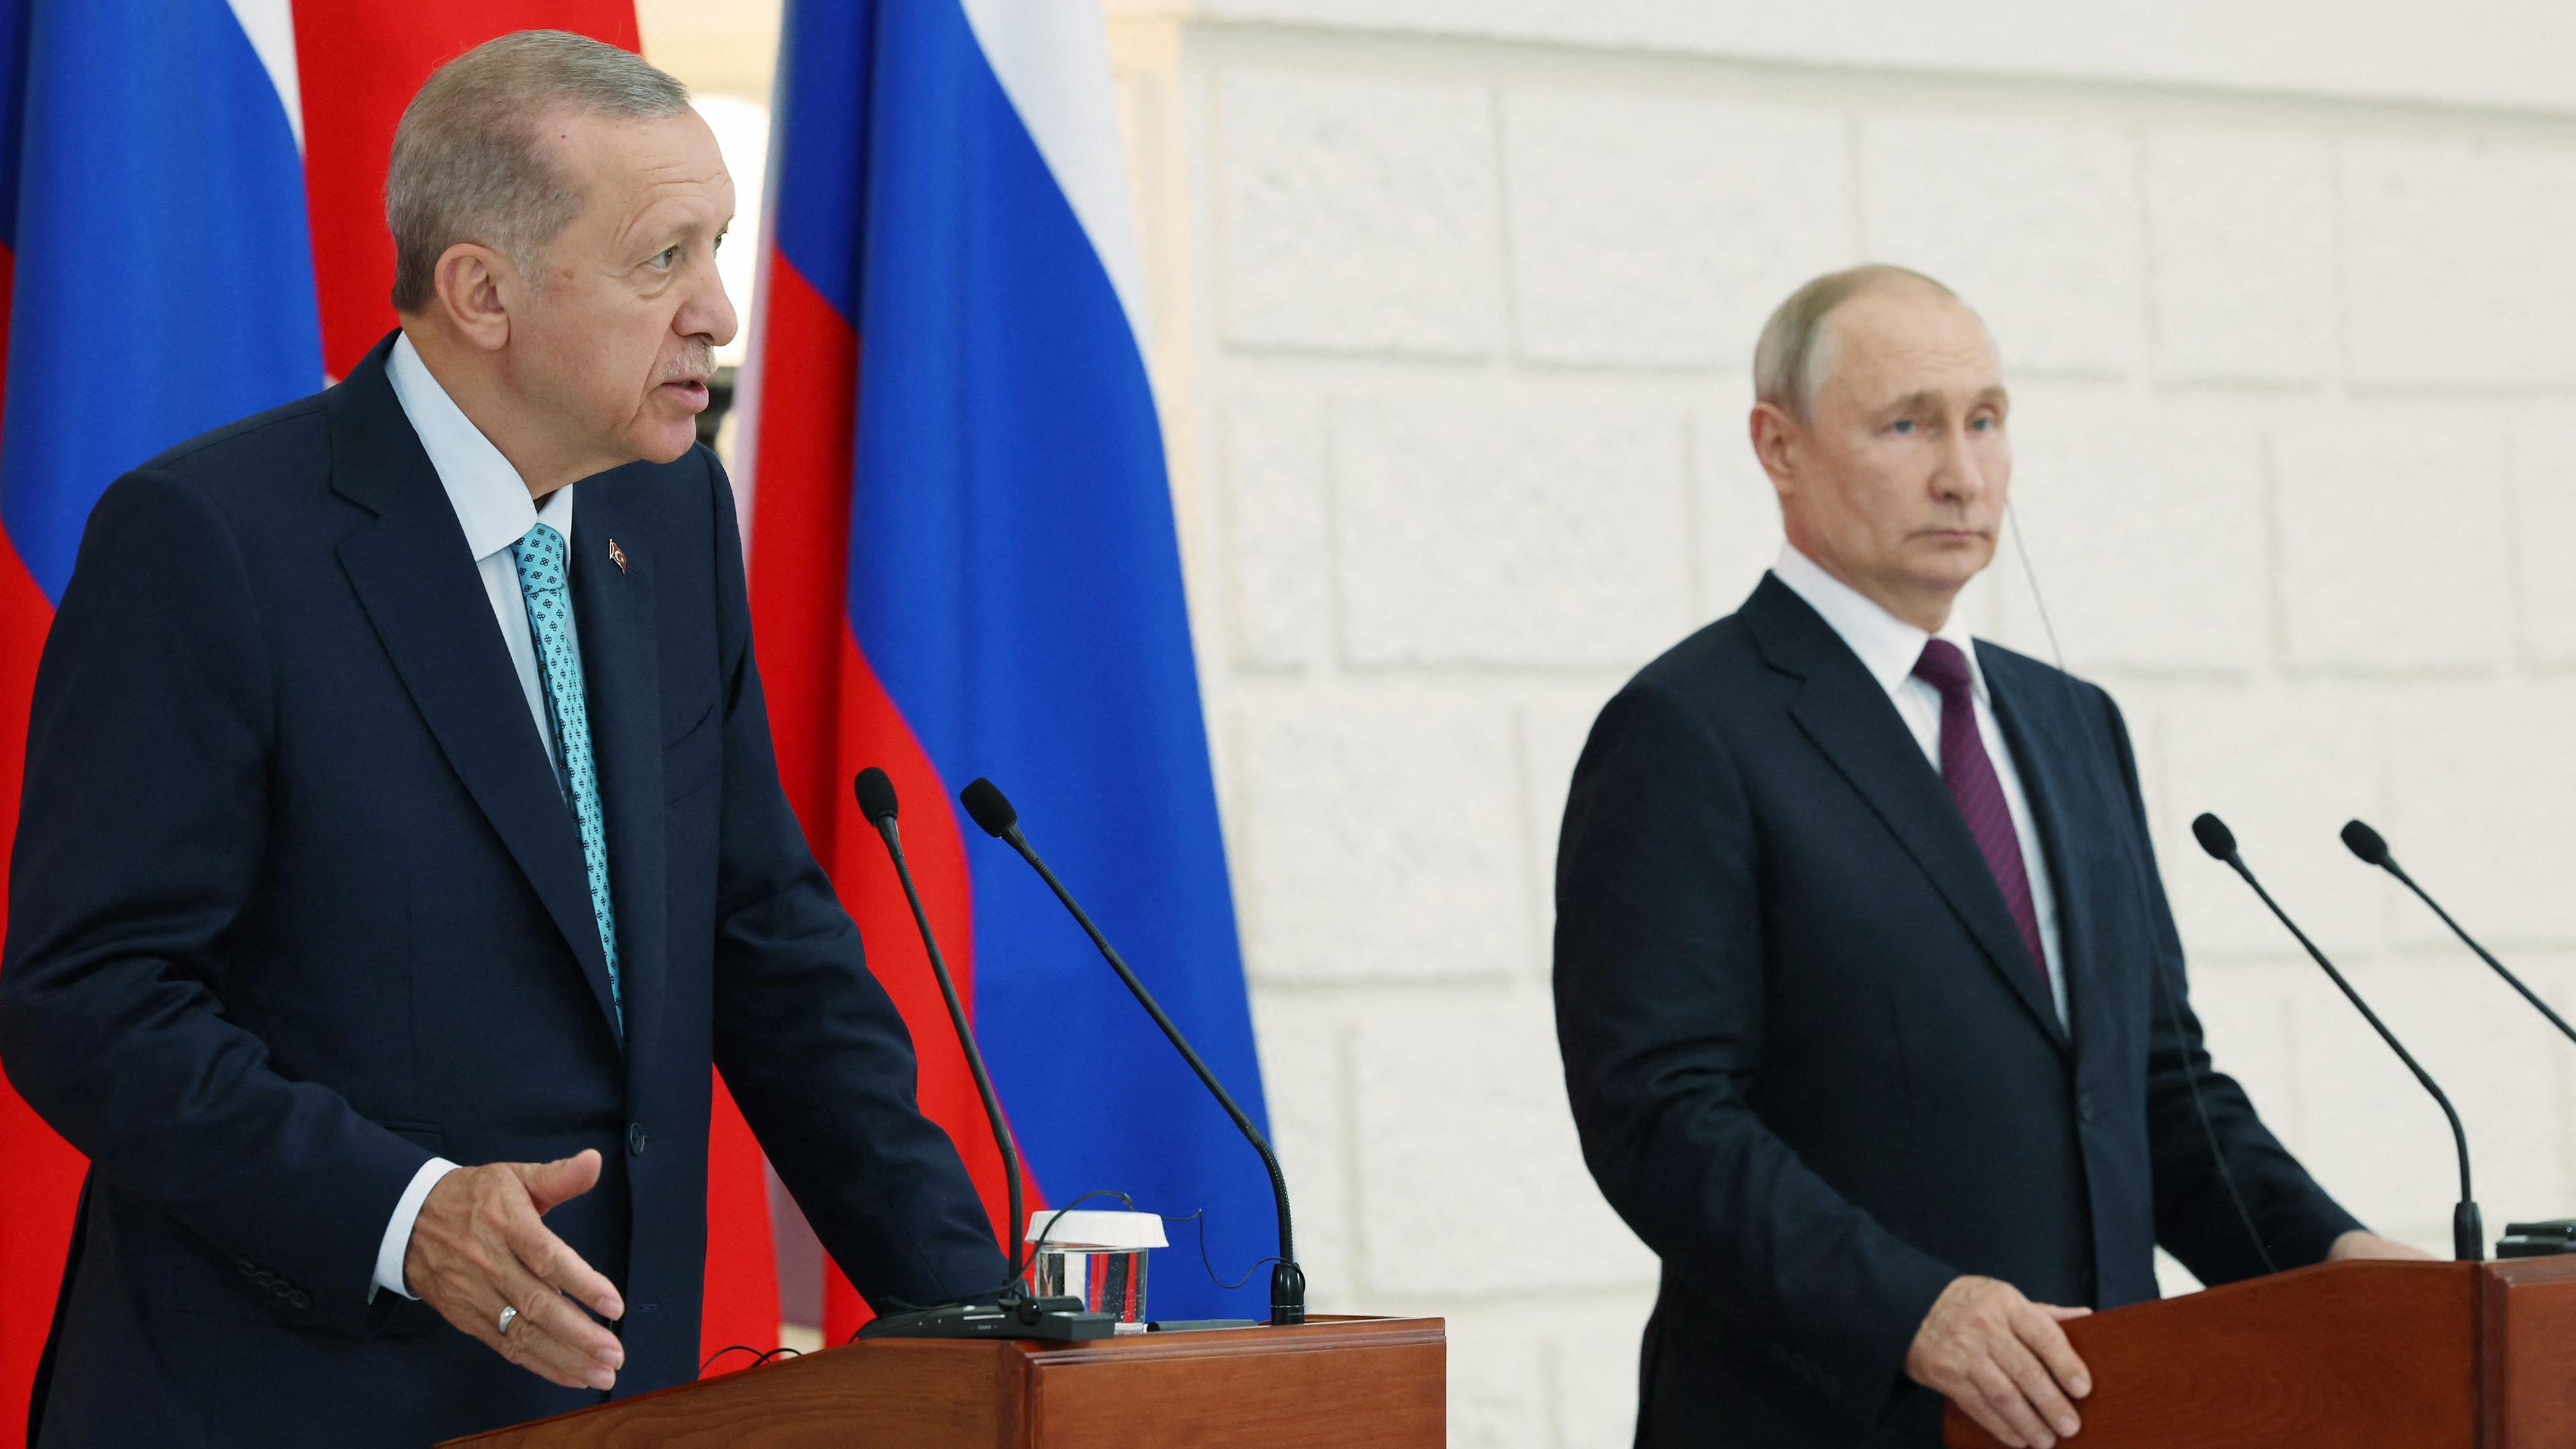 Der türkische Präsident Erdogan und der russische Präsident Putin auf einer PK nach dem Treffen in Sotschi.